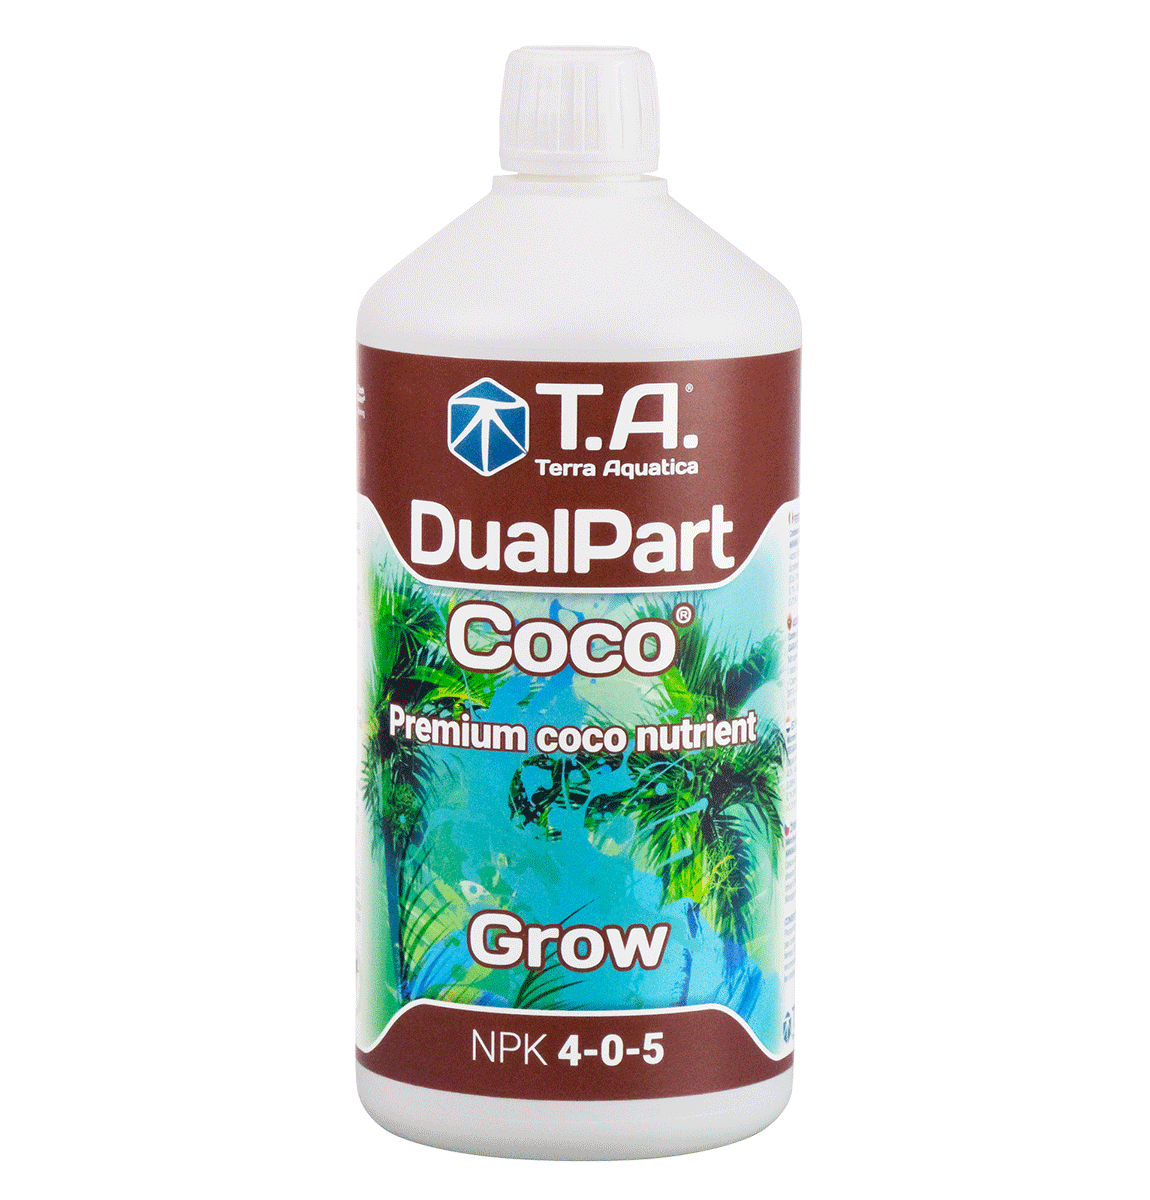 DualPart-Coco-nutrient-2022-sticker-GROW